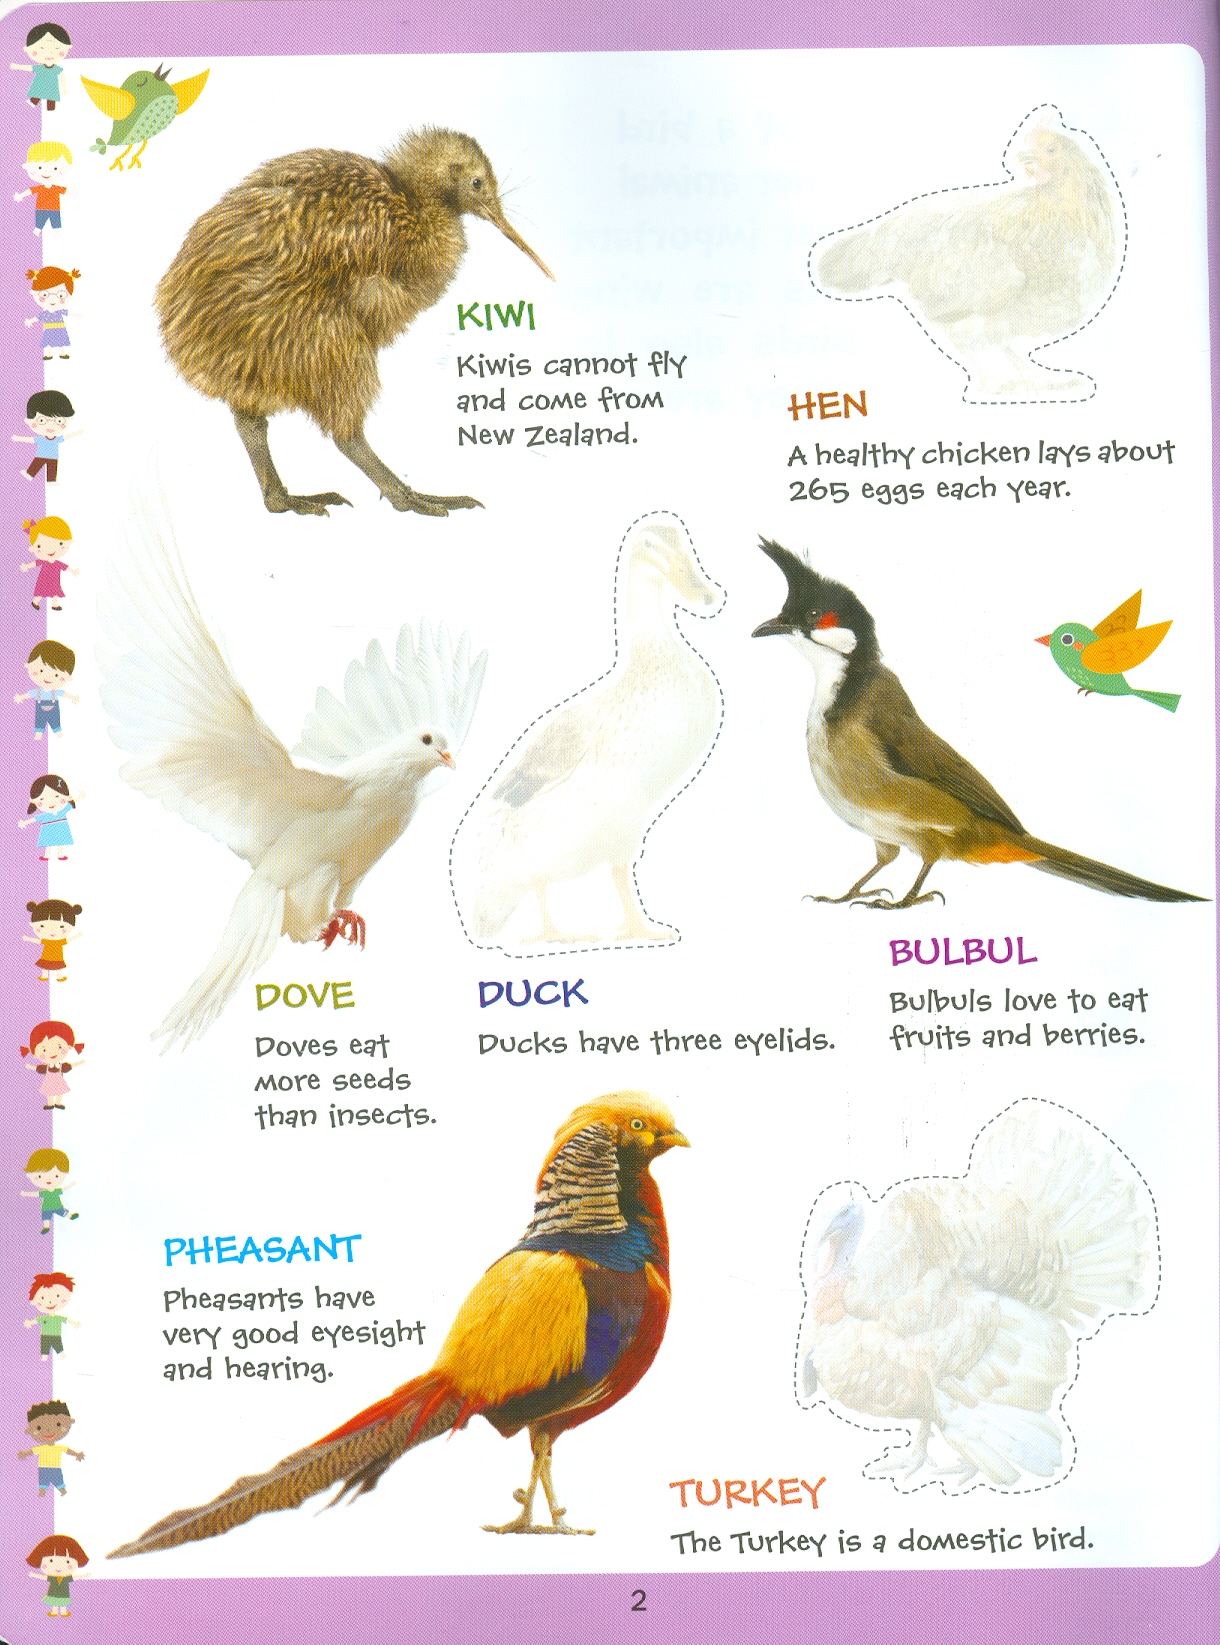 Play With Sticker - Birds (Chơi Cùng Hình Dán - Các Loài Chim)